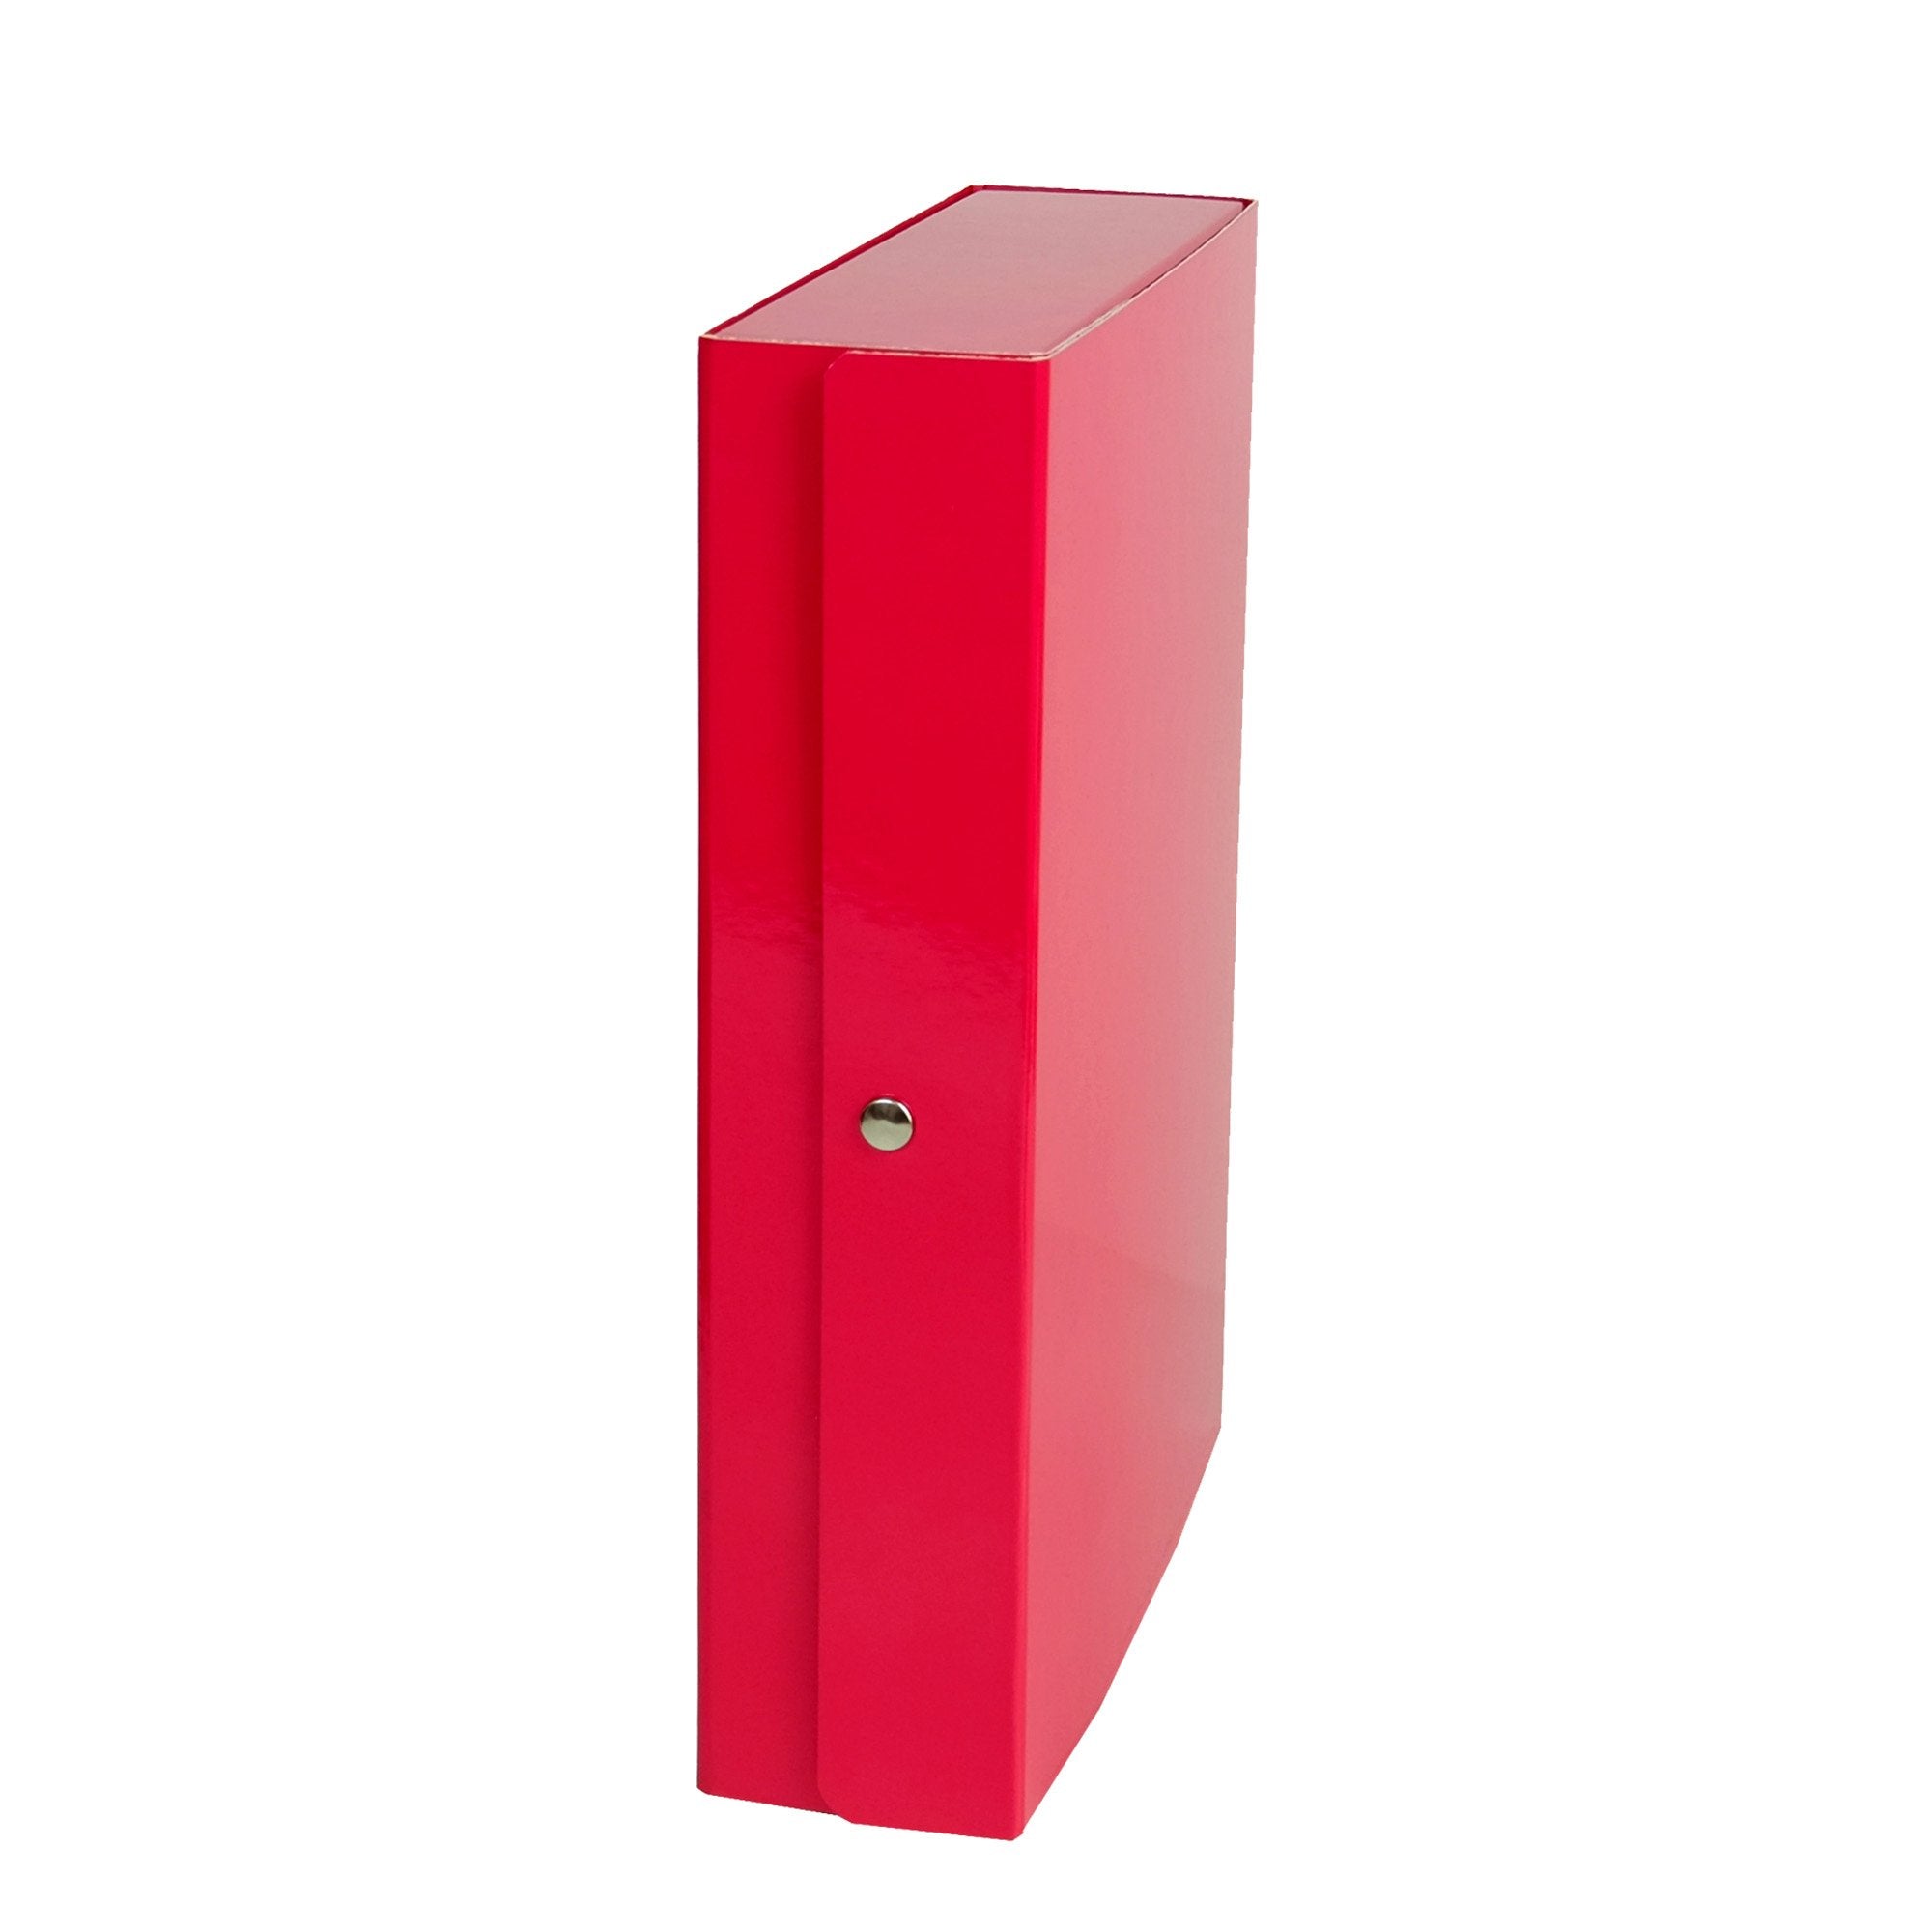 starline-scatola-progetto-8-rosso-glossy